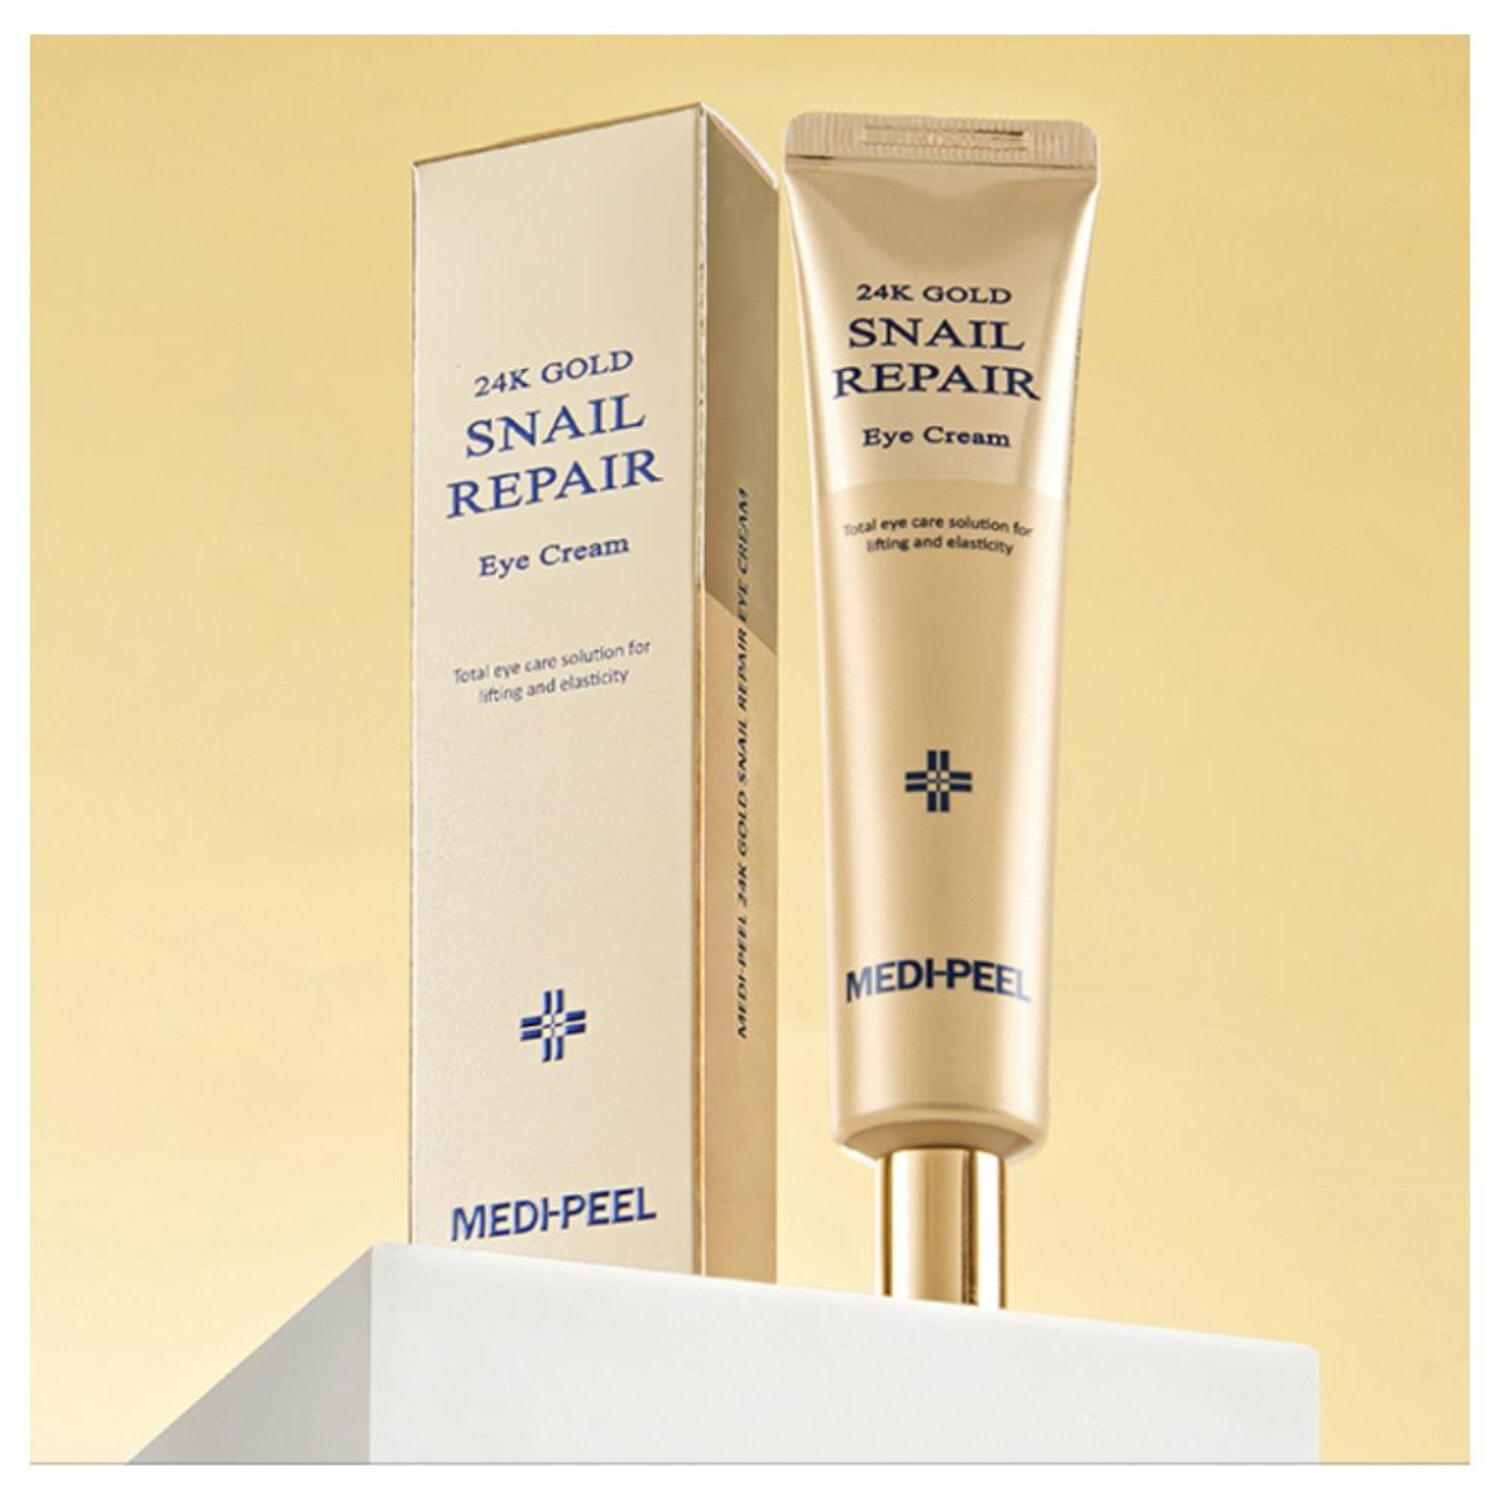 Medi-Peel 24K Gold Snail Repair Eye Cream, Регенерирующий крем для век с золотом и муцином улитки, 40 мл. / 340548 (1Т)